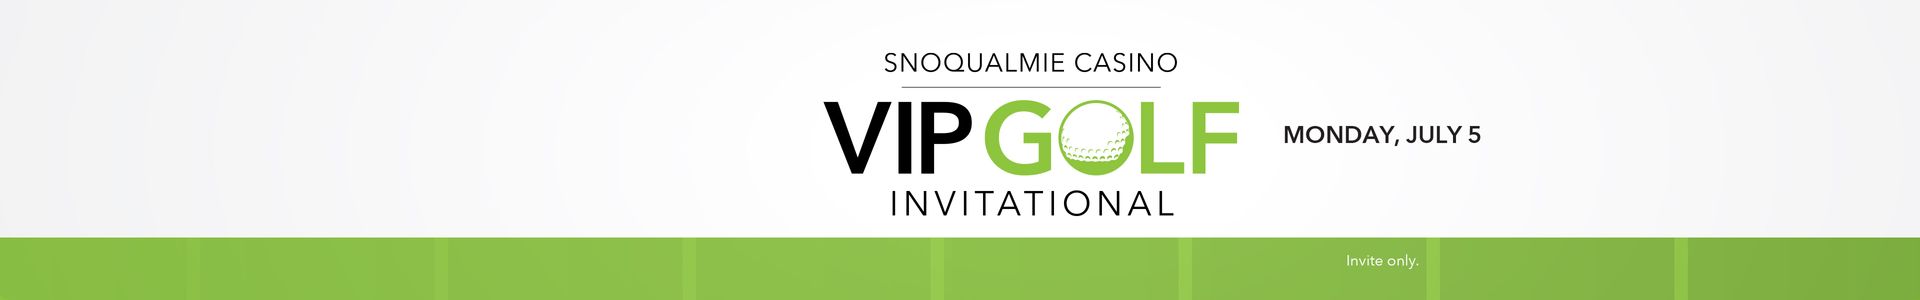 4th Annual Snoqualmie Casino Invitational Golf tournament